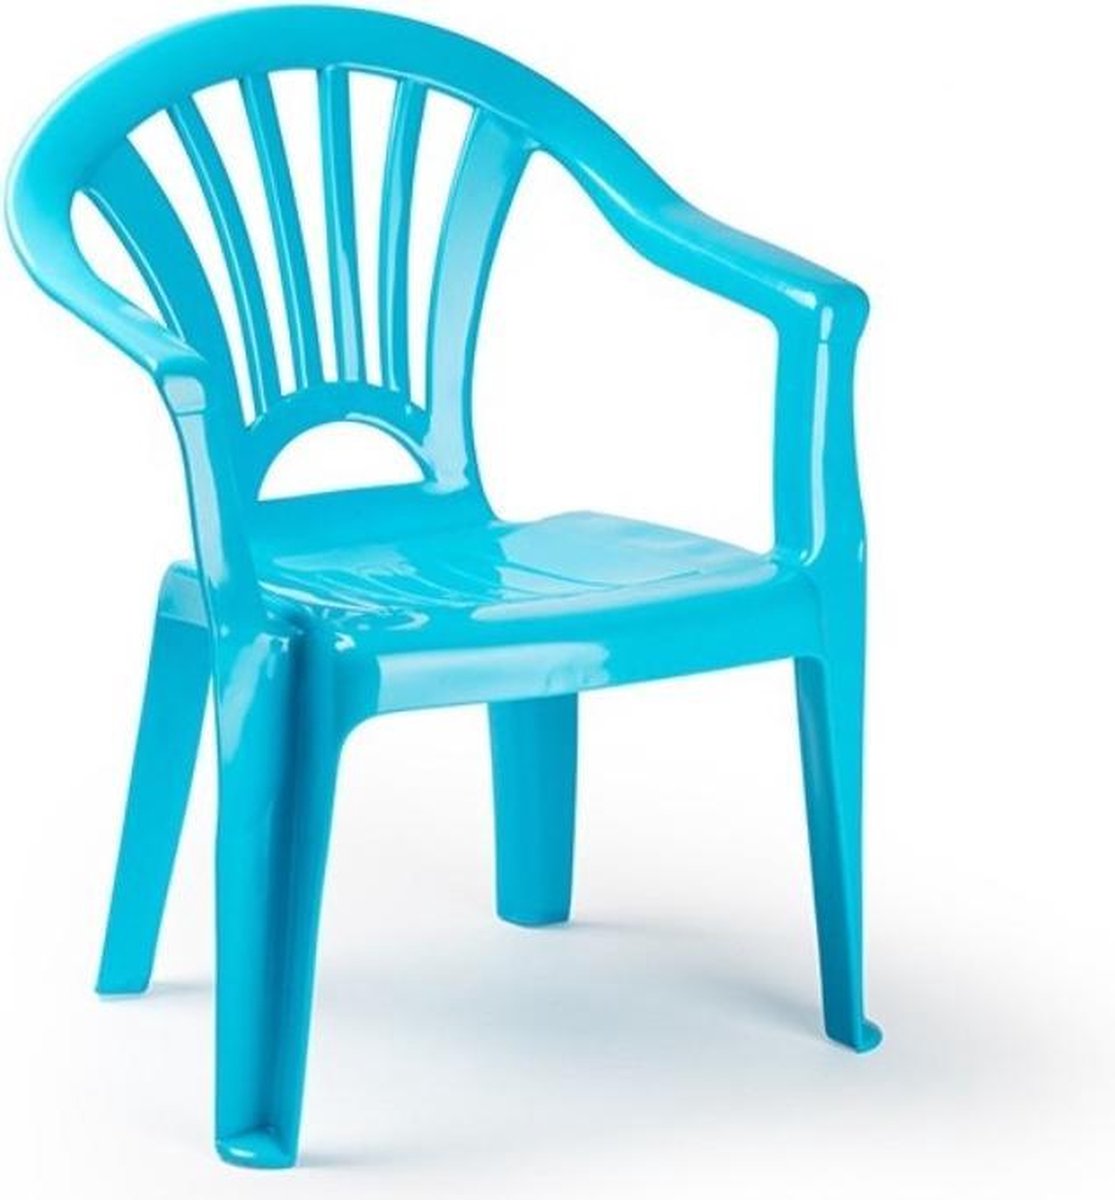 6x stuks kinder stoelen 50 cm - Lichtblauw - Tuinmeubelen - Kunststof binnen/buitenstoelen voor kinderen